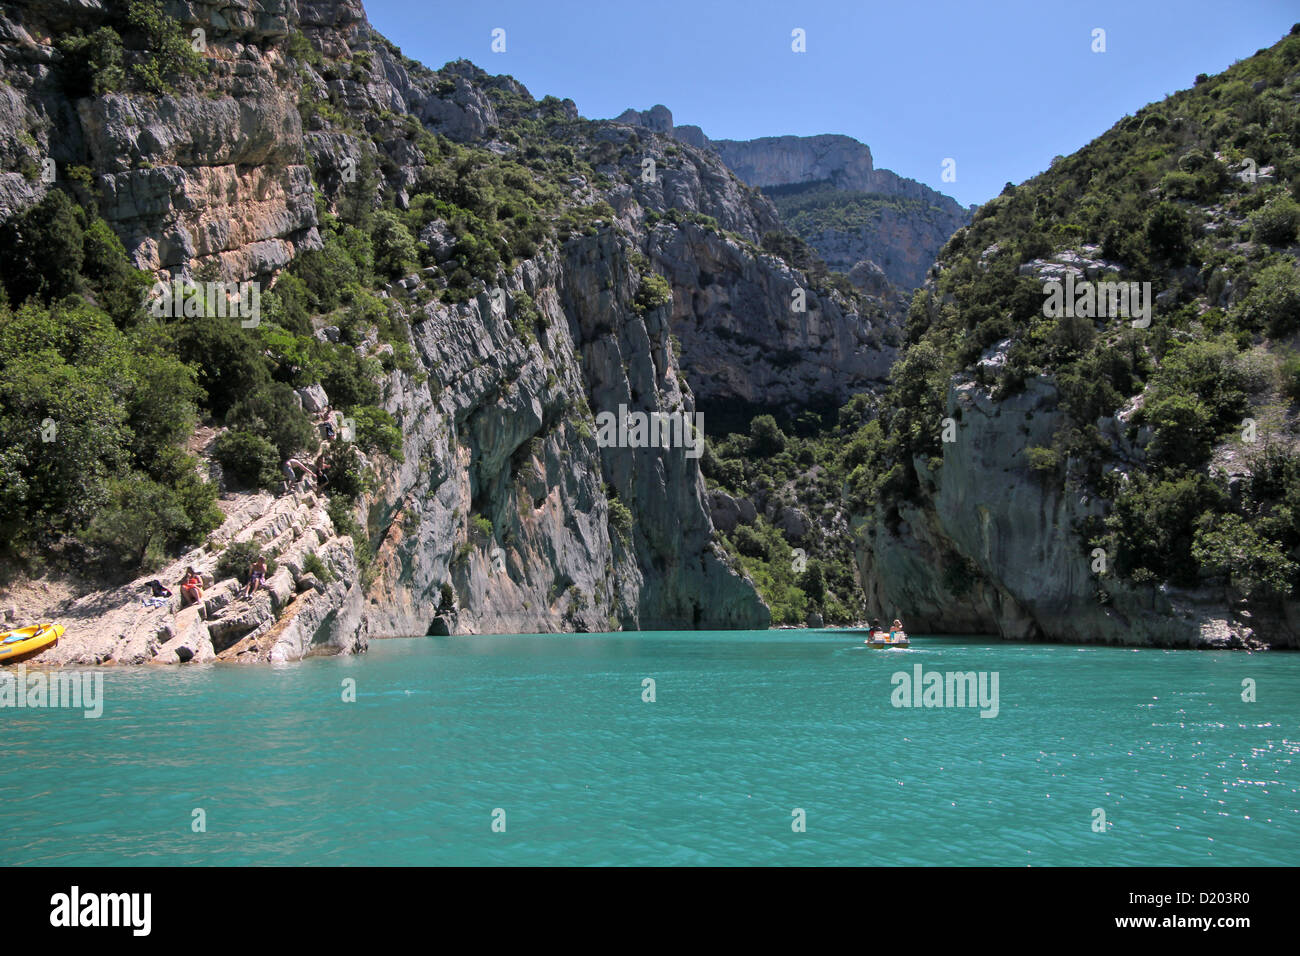 Les gorges du Verdon au Lac de Sainte-Croix, à Aiguines, Provence, France Banque D'Images